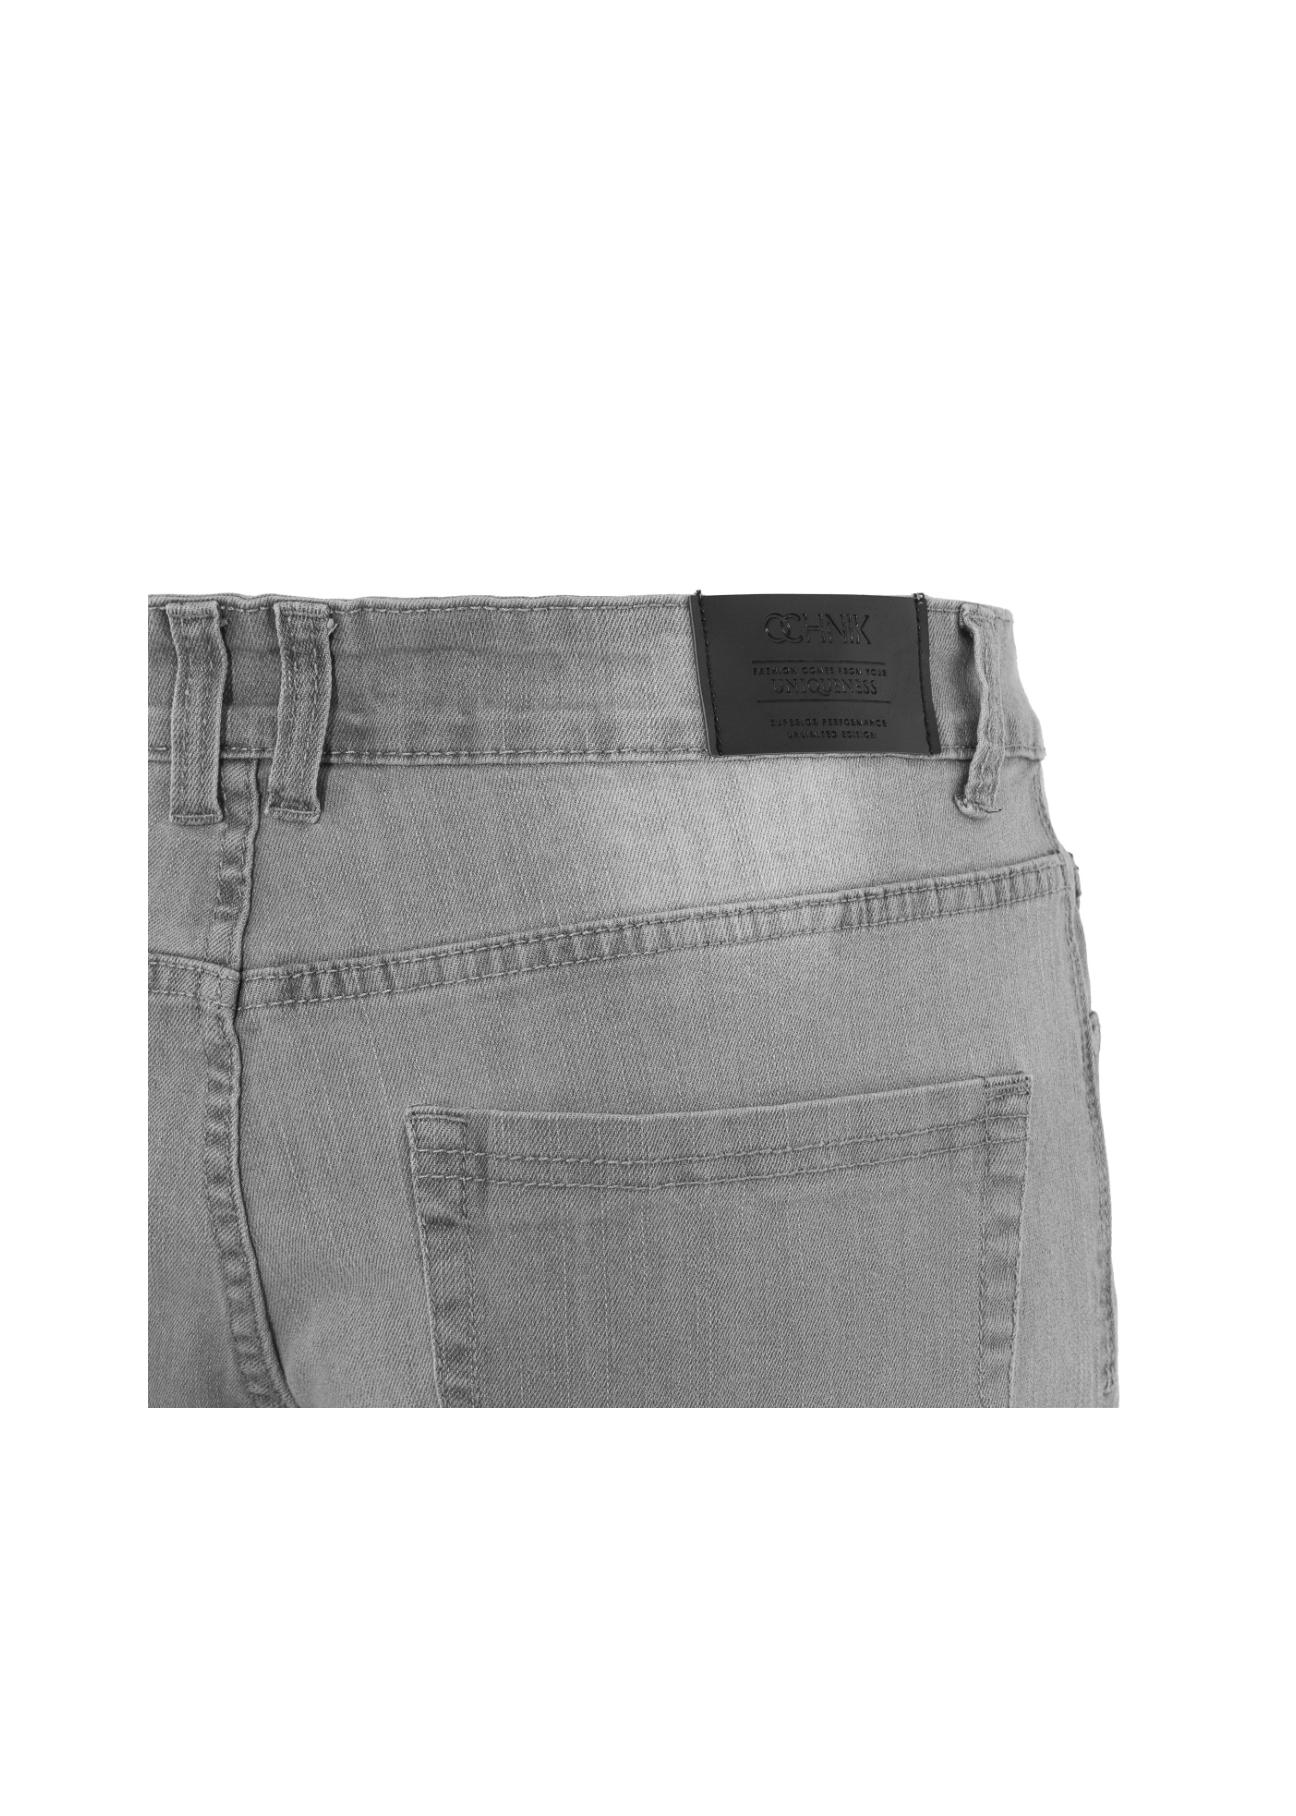 Spodnie męskie JEAMT-0008-91(W20)